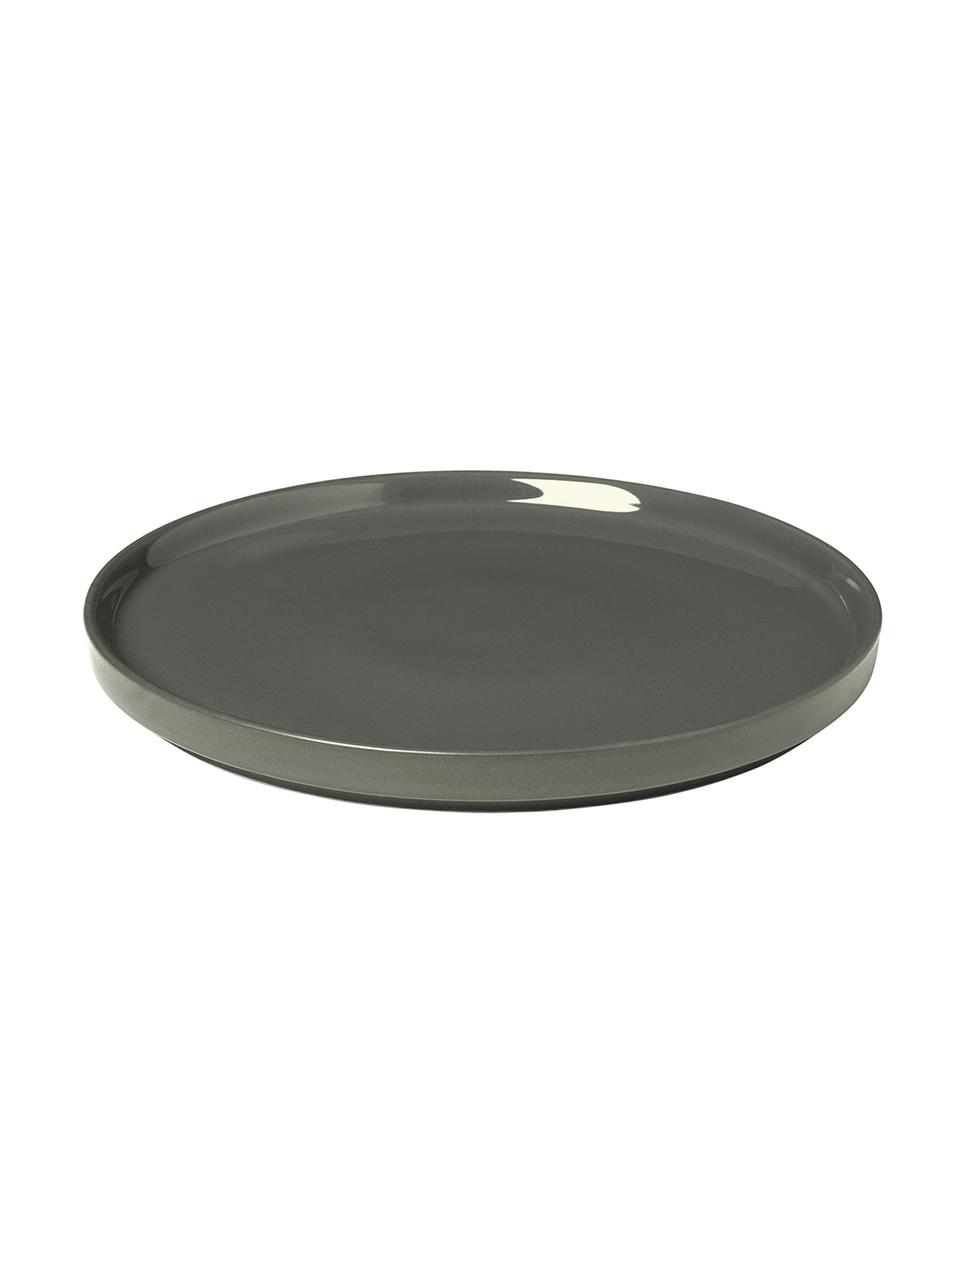 Piattino da dessert grigio scuro opaco/lucido Pliar 6 pz, Ceramica, Grigio scuro, Ø 20 cm